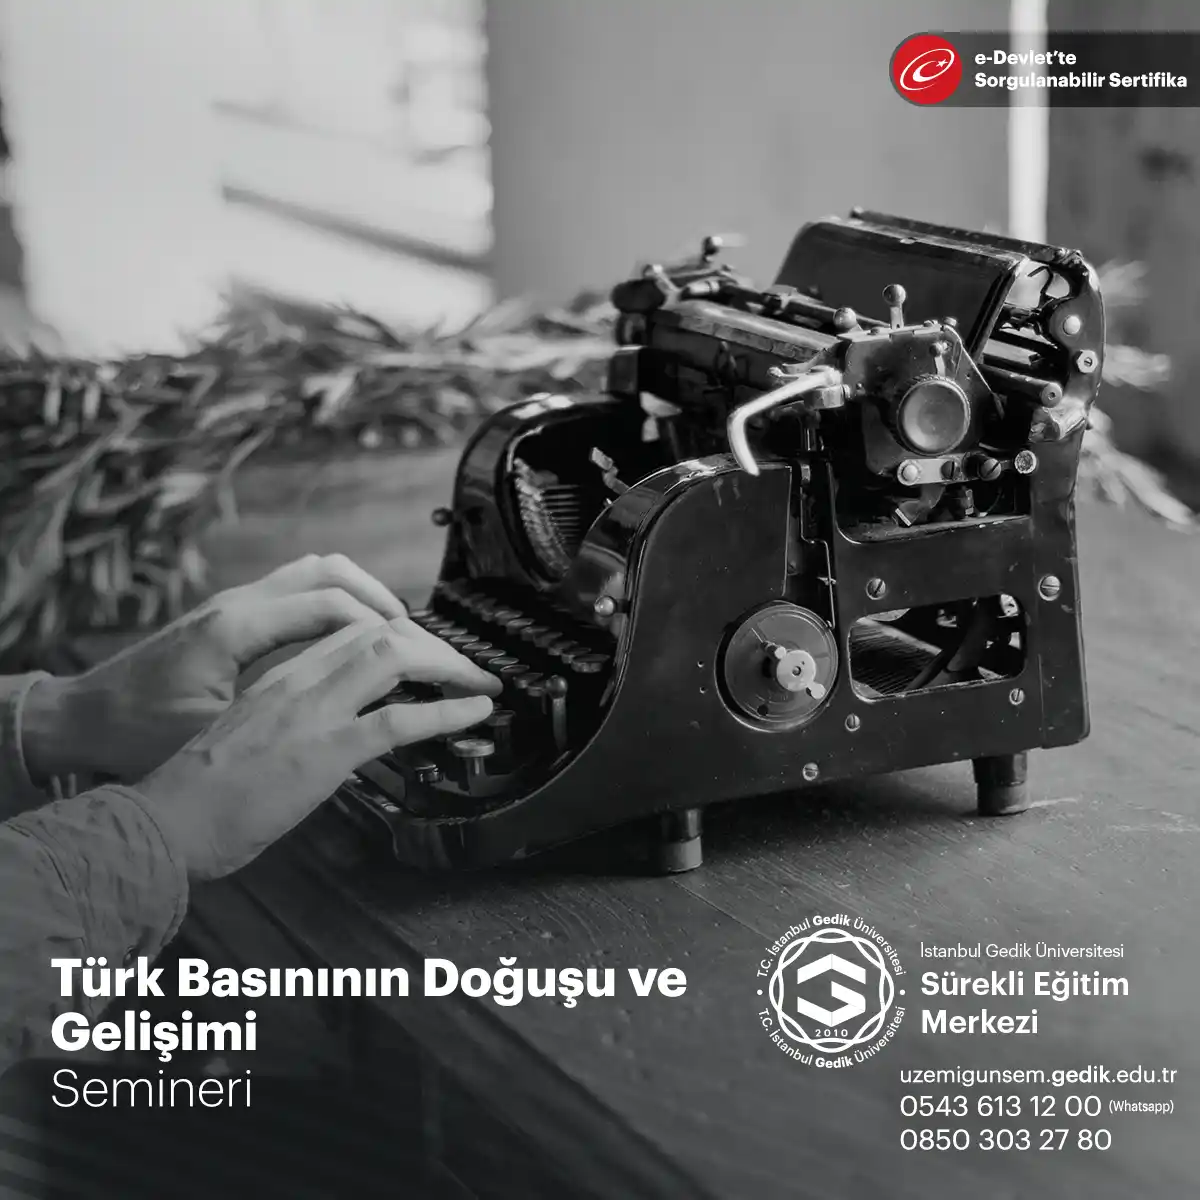 Türk Basınının Doğuşu ve Gelişimi Semineri, katılımcılara Türk gazeteciliğinin kökenlerini ve gelişimini anlama fırsatı sunan bir eğitim programıdır.